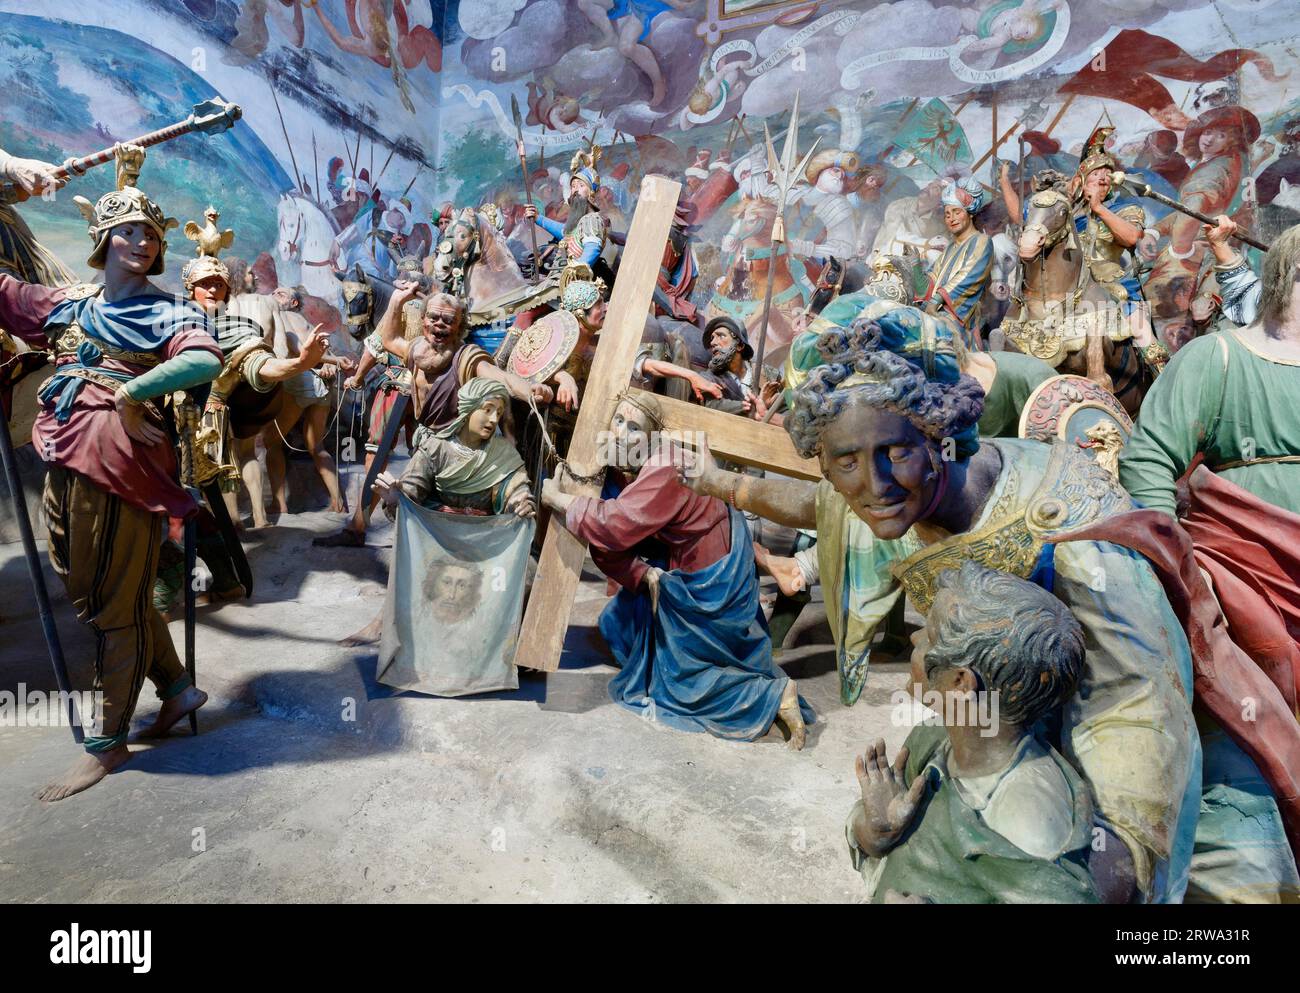 Questa cappella mostra il modo in cui Cristo porta a Golgotha, con la croce sulle spalle e accompagnato dalla folla. Si vede il momento in cui lui Foto Stock